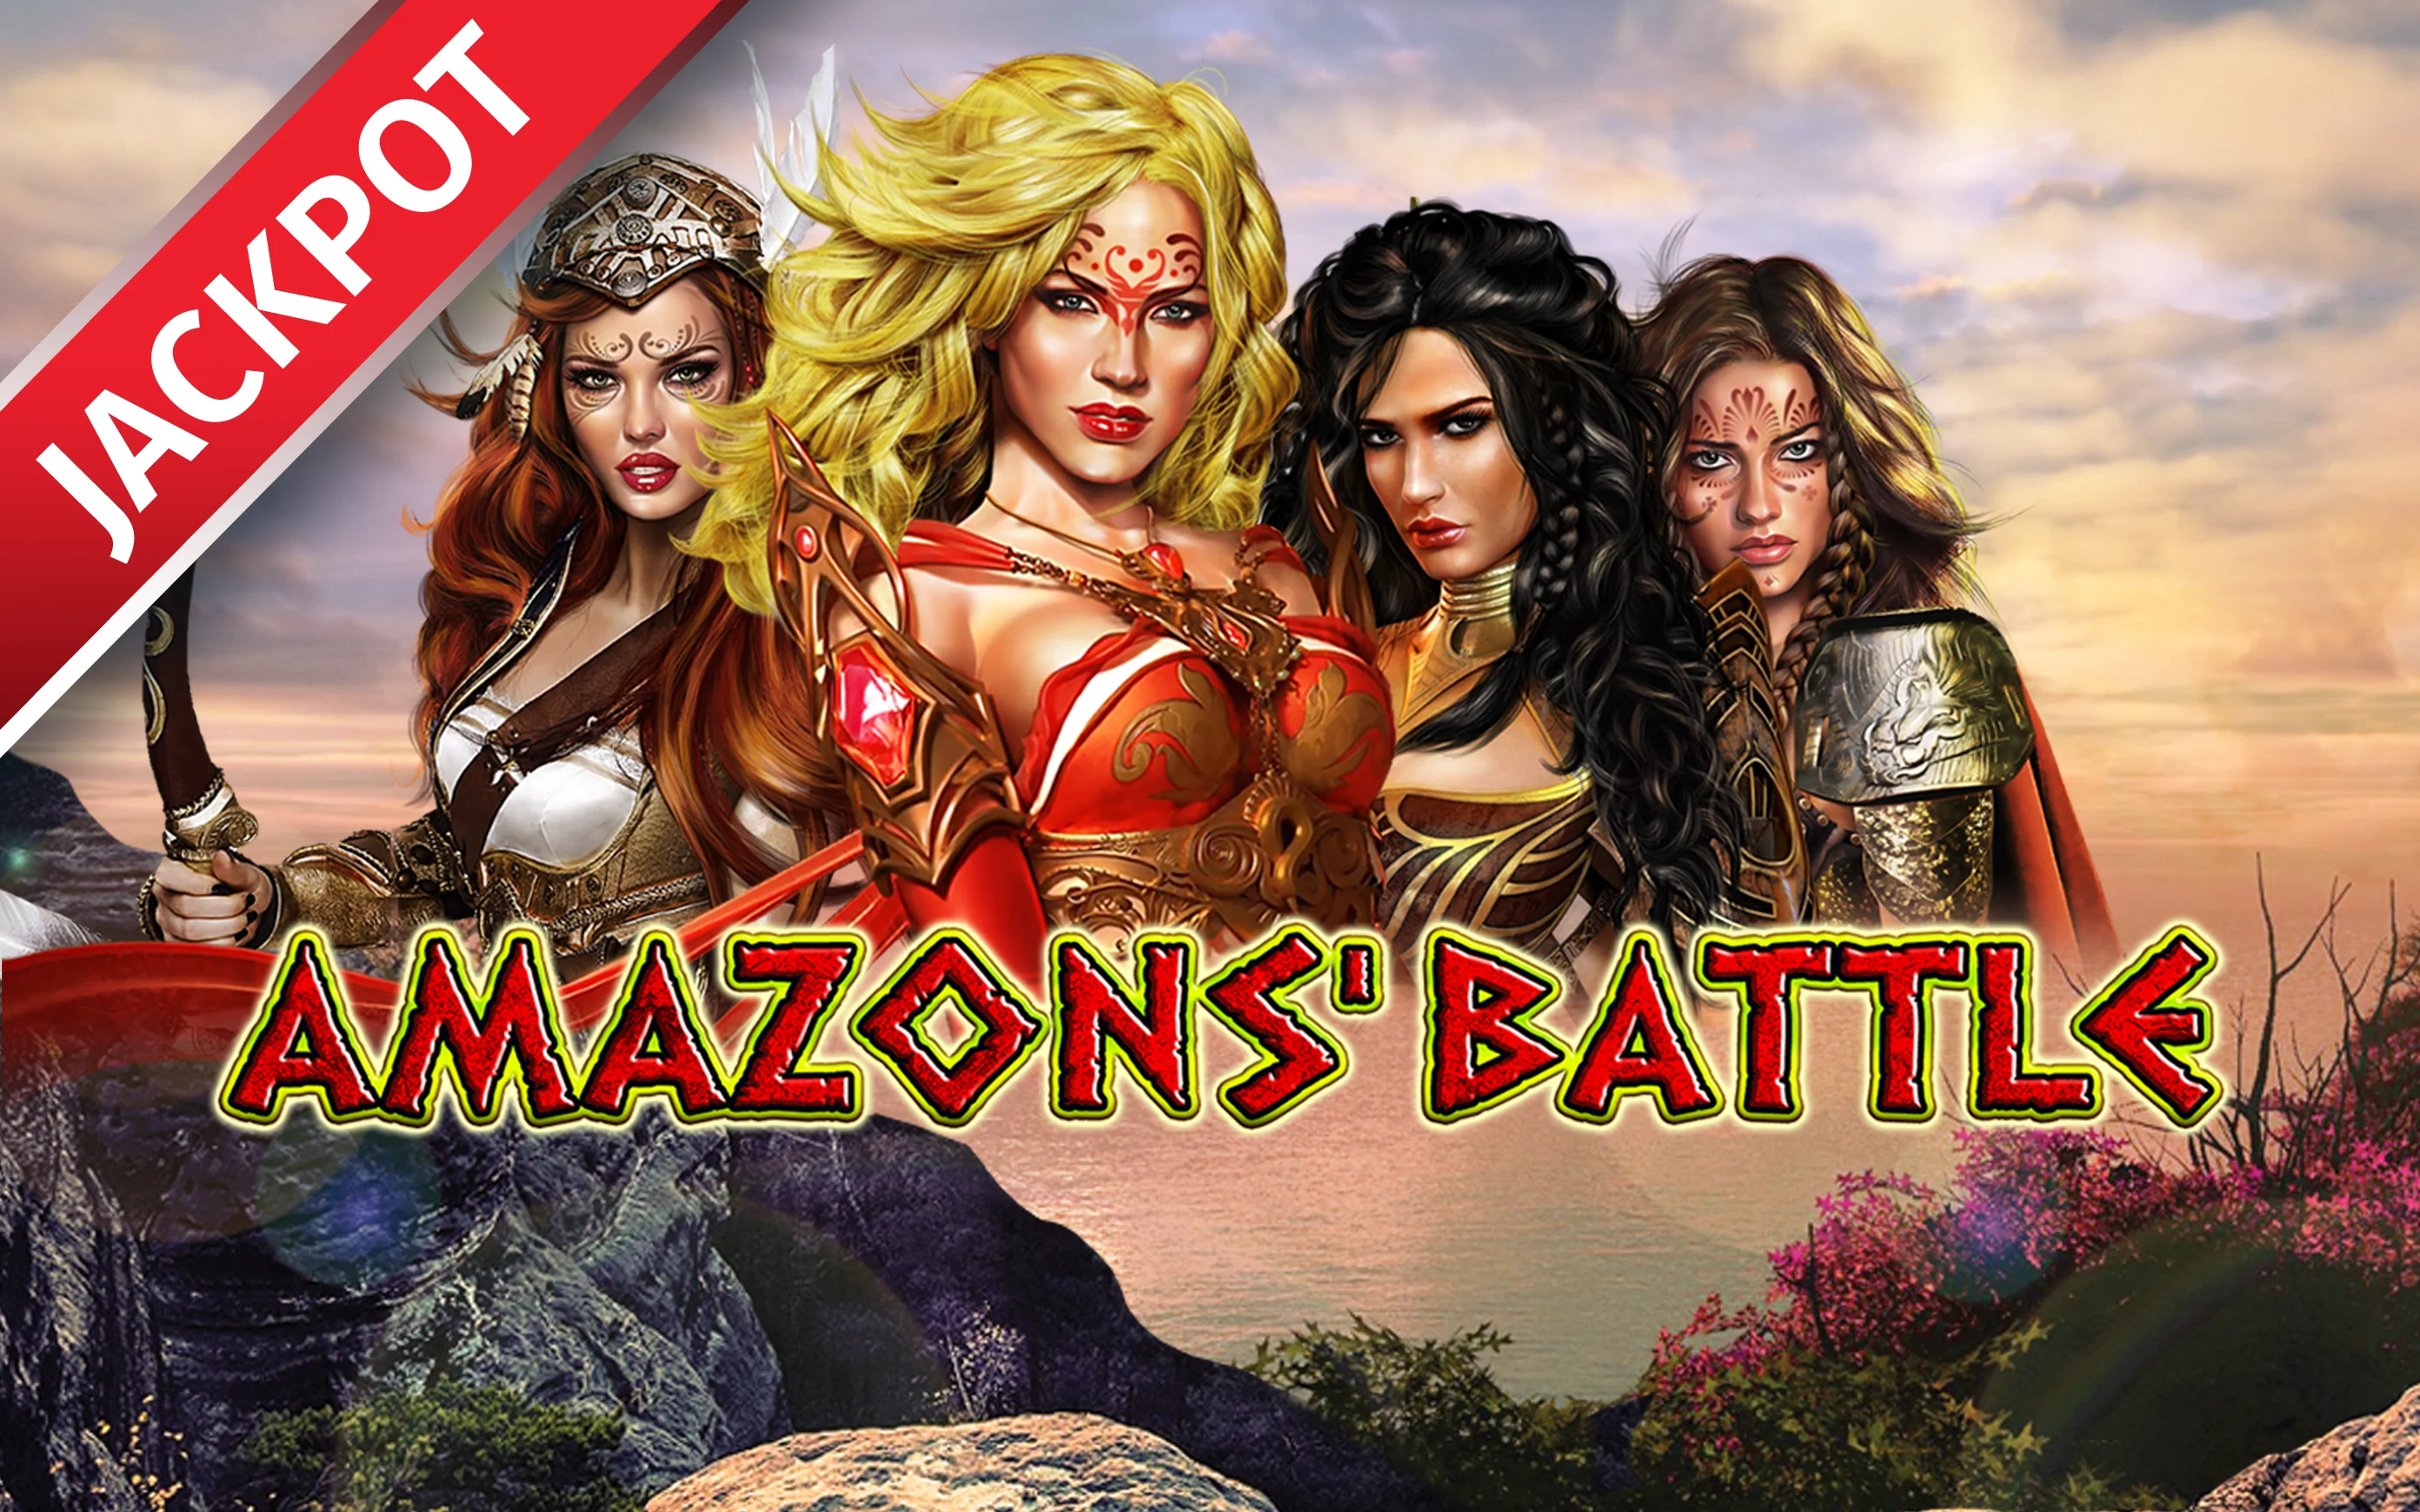 Gioca a Amazons Battle sul casino online Starcasino.be